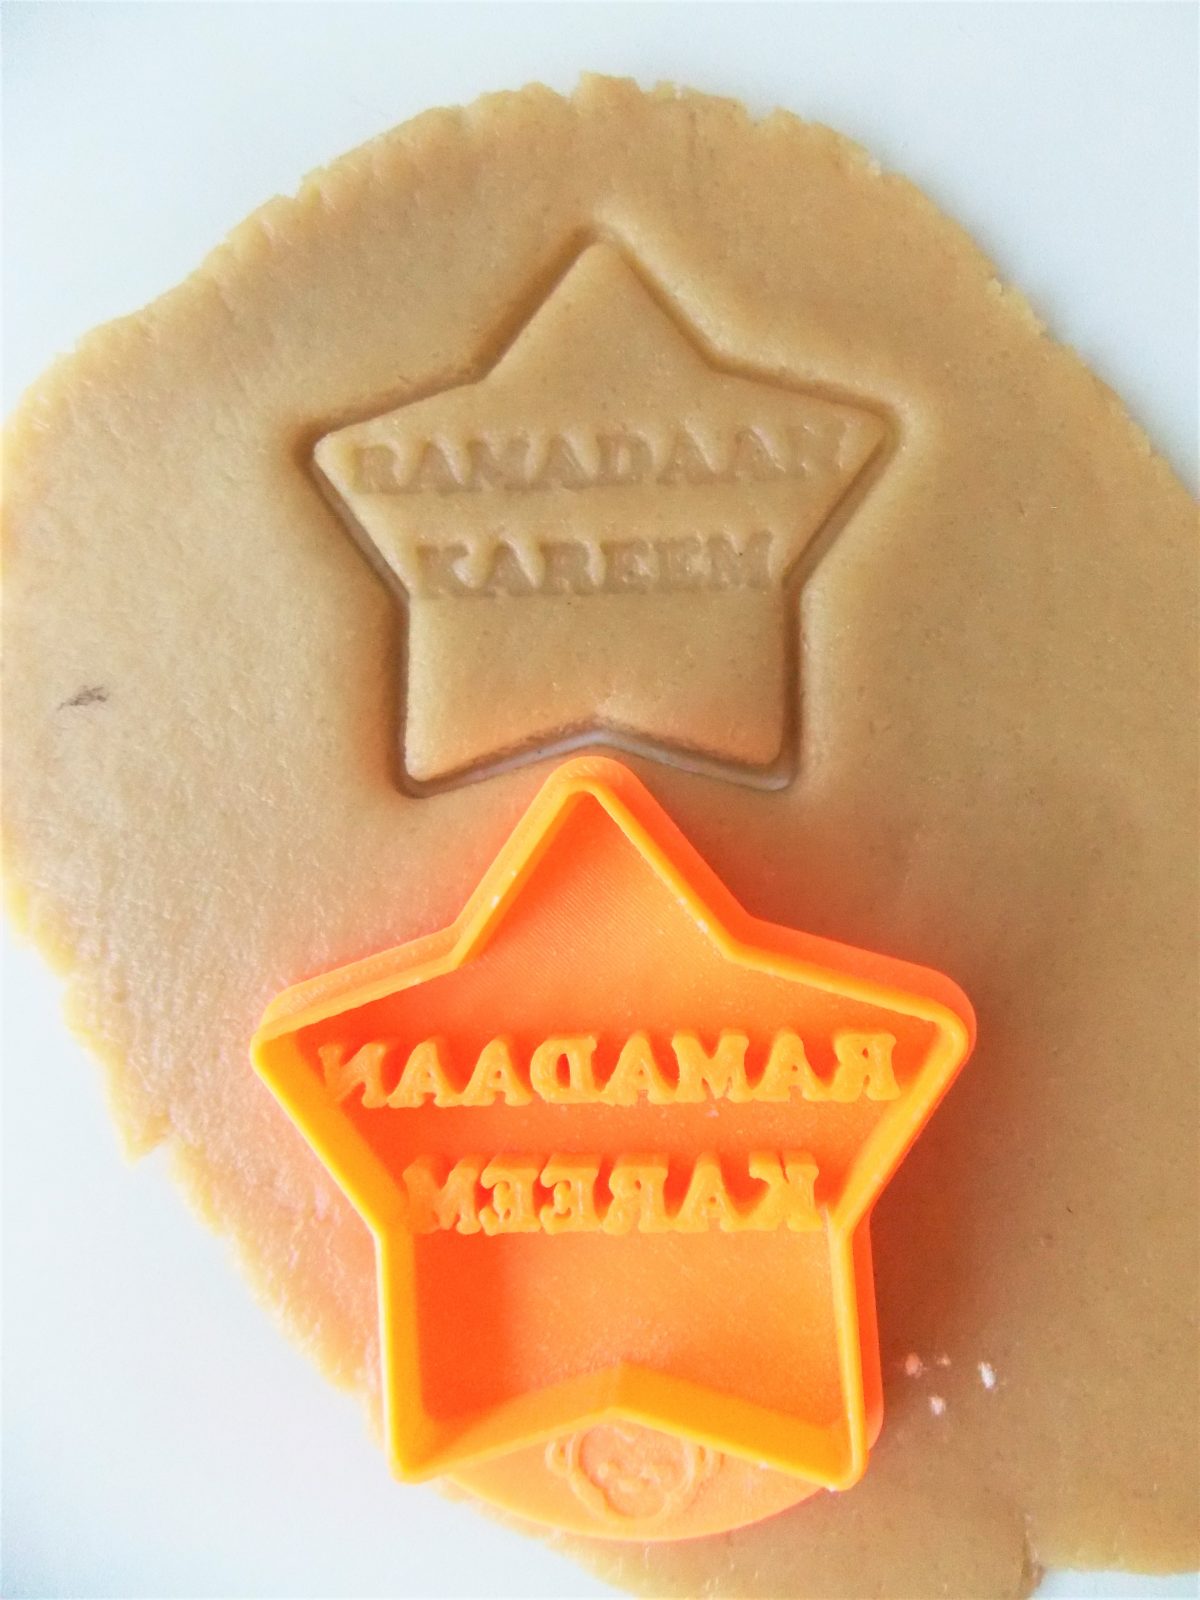 Ramadan star cookie cutter on dough